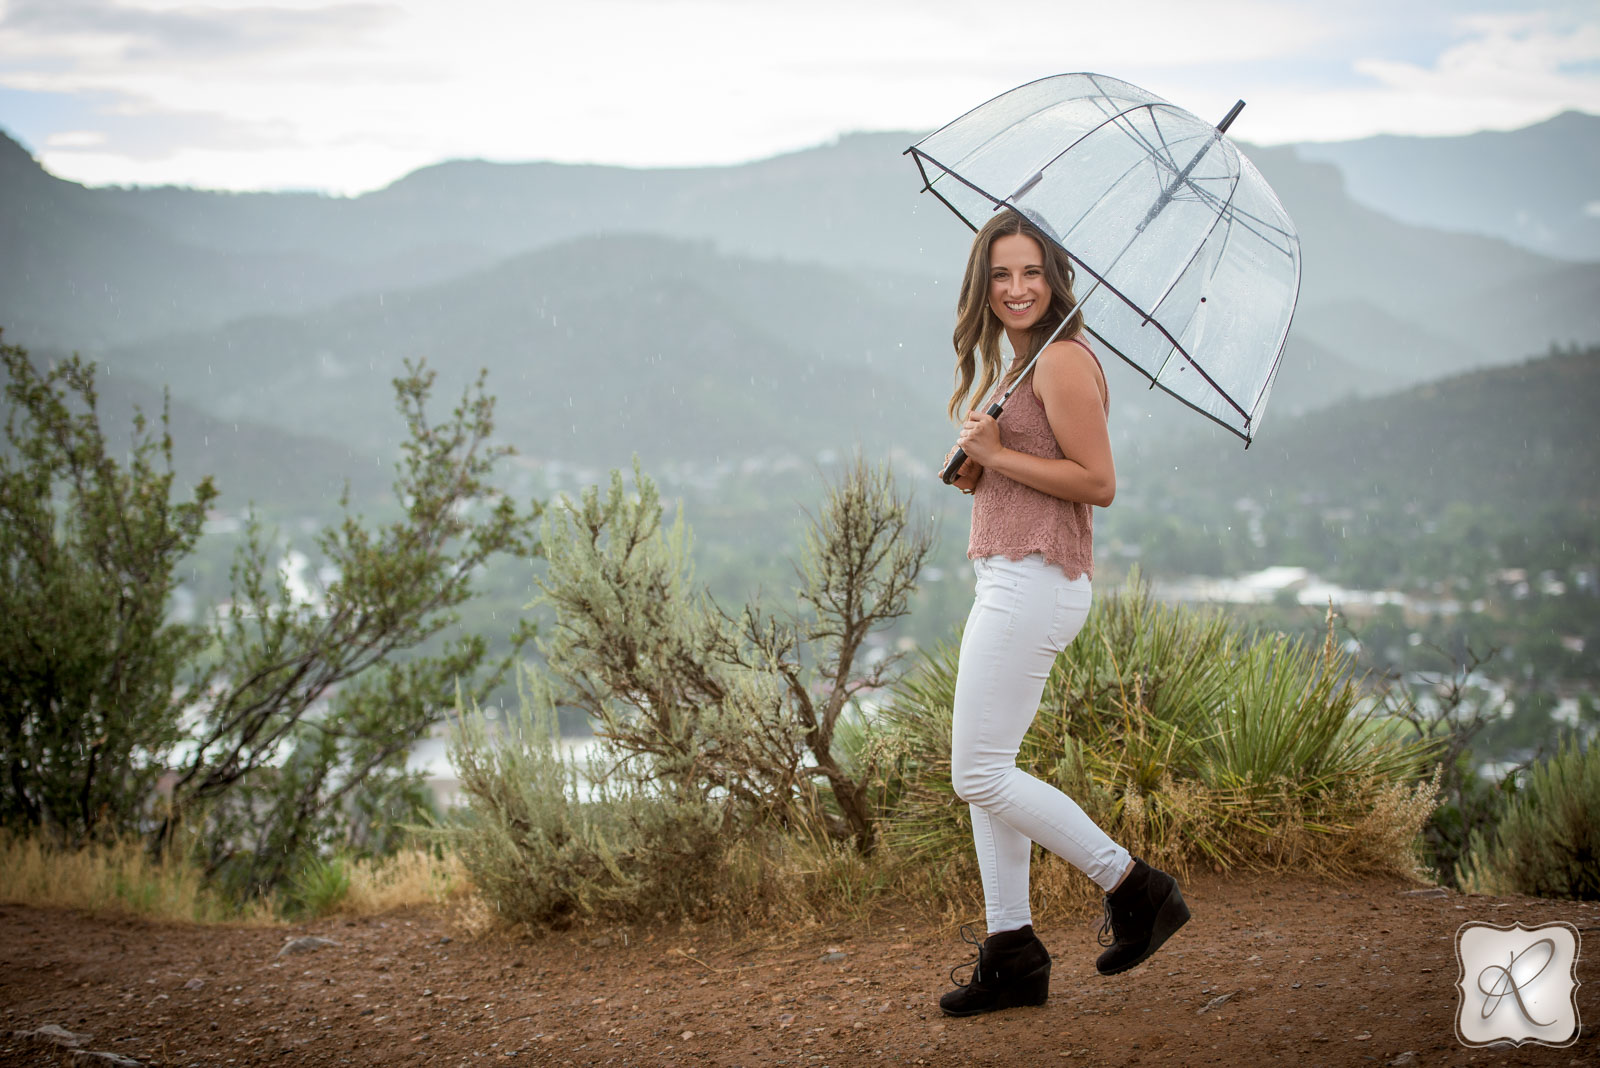 Bayfield Colorado Senior Pictures - umbrella